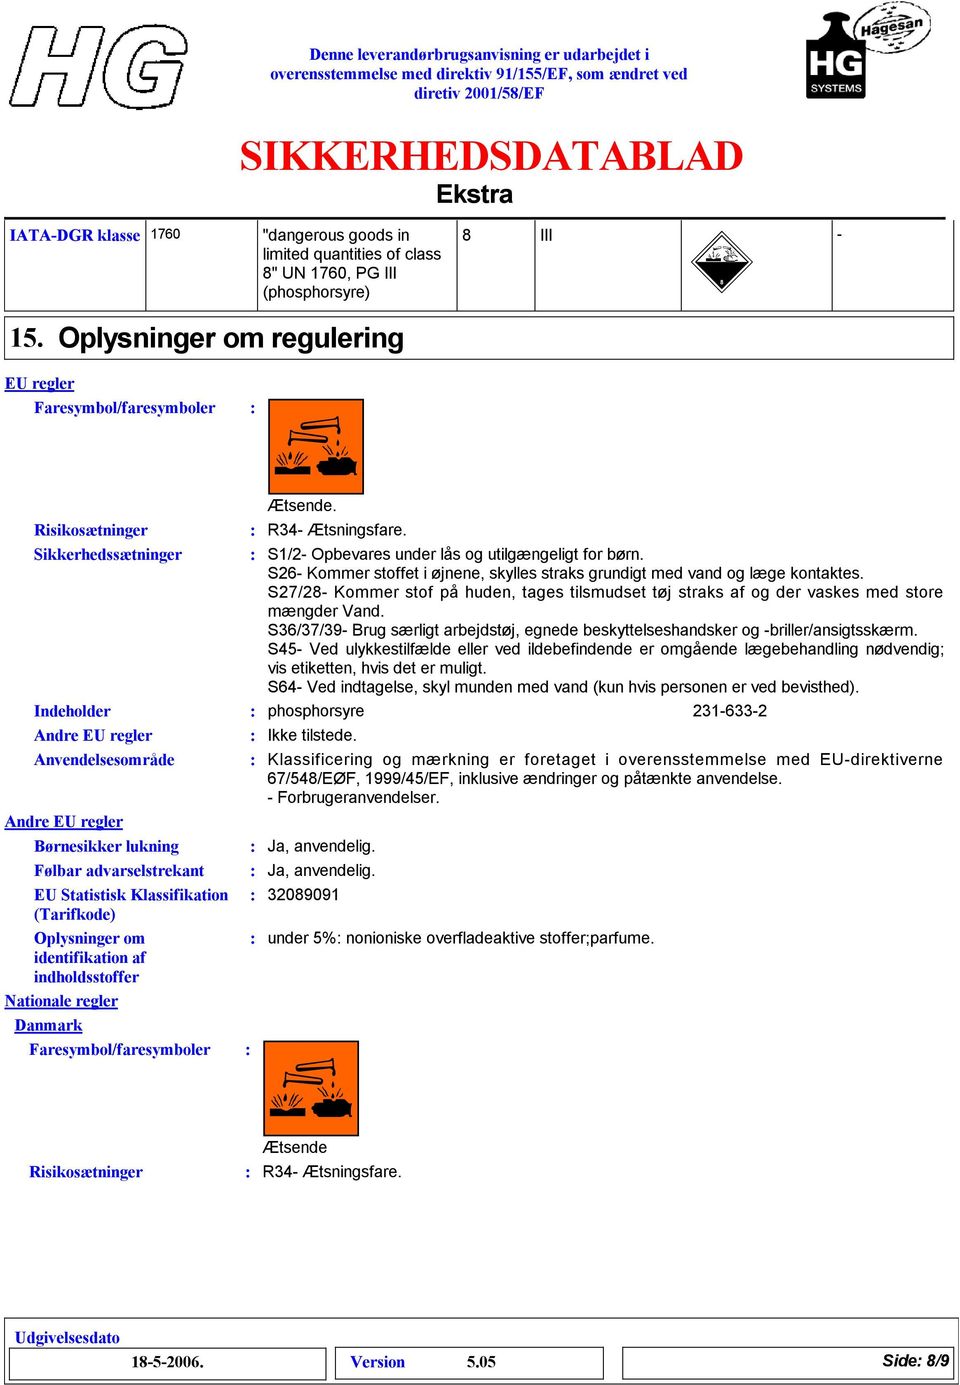 advarselstrekant EU Statistisk Klassifikation (Tarifkode) Oplysninger om identifikation af indholdsstoffer Nationale regler Danmark Faresymbol/faresymboler Ætsende. R34- Ætsningsfare.